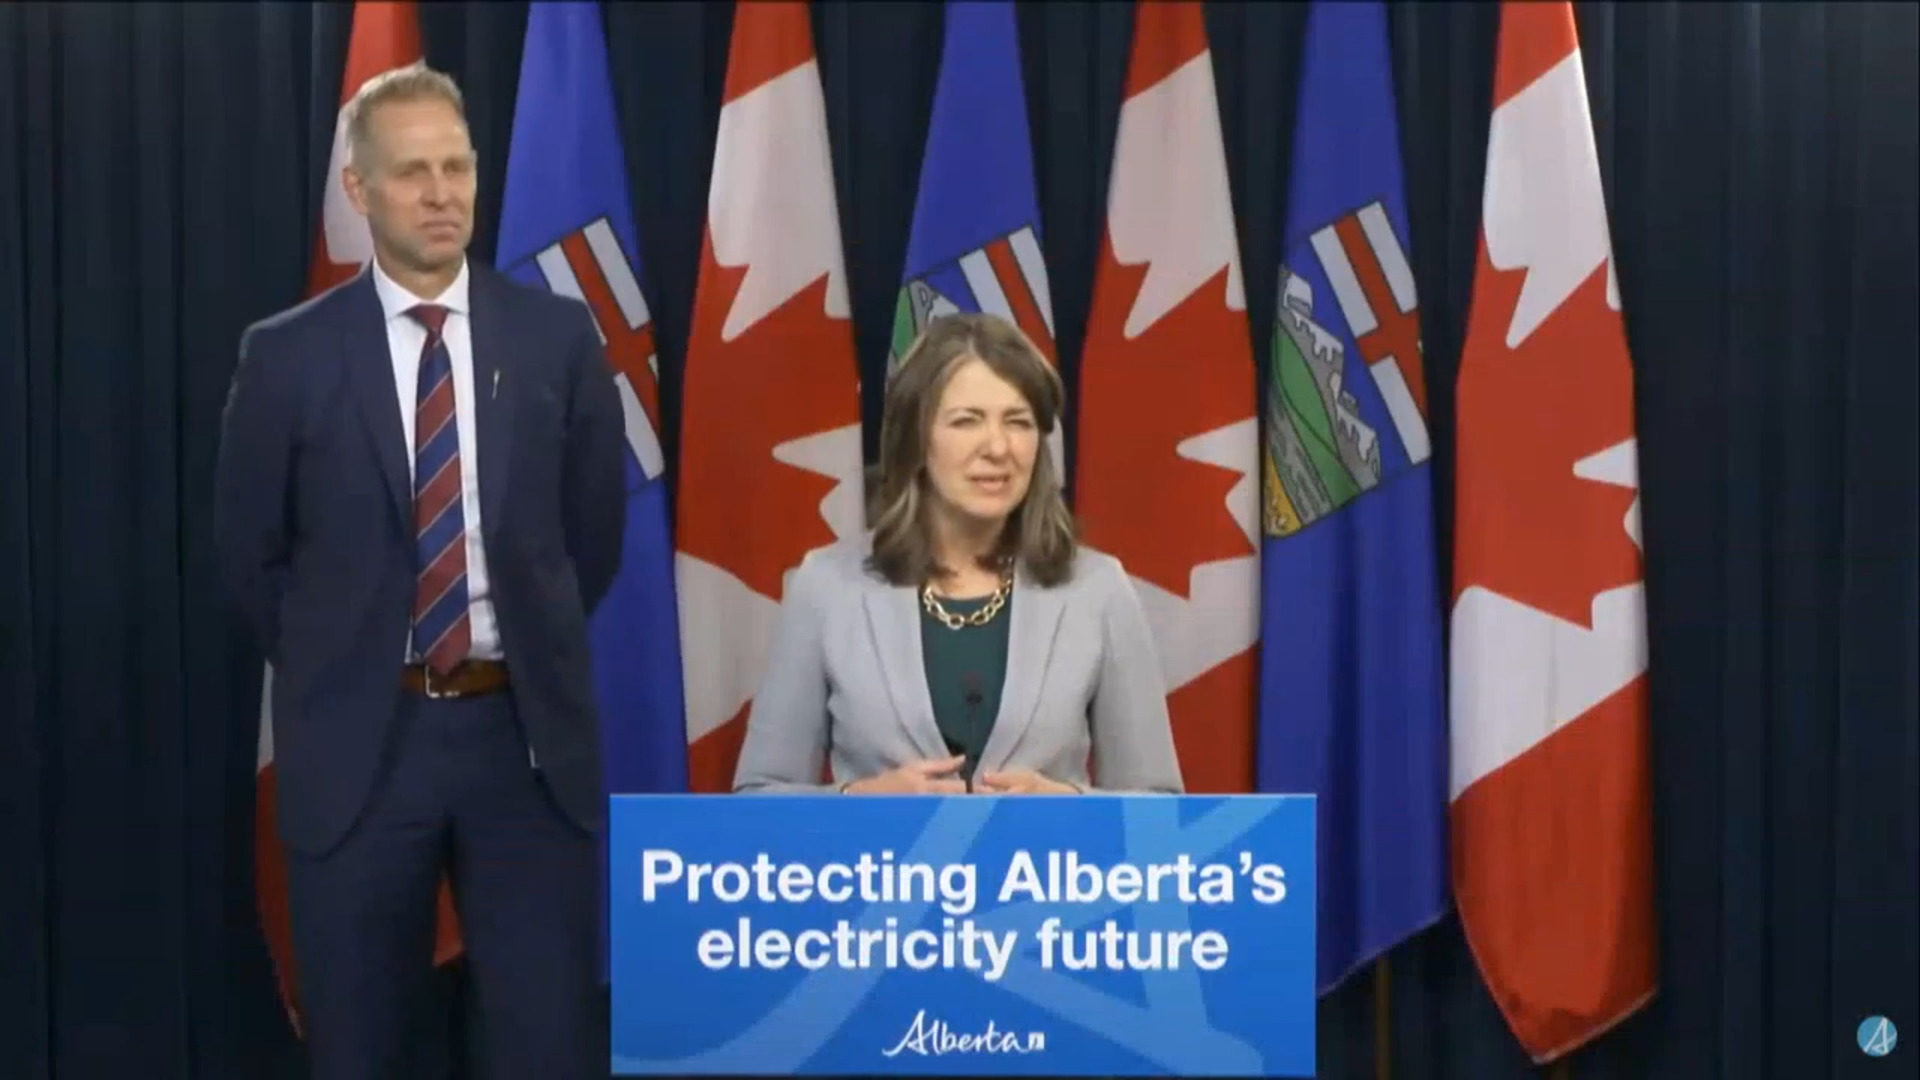 Alberta premier not a fan of Calgary's new brand